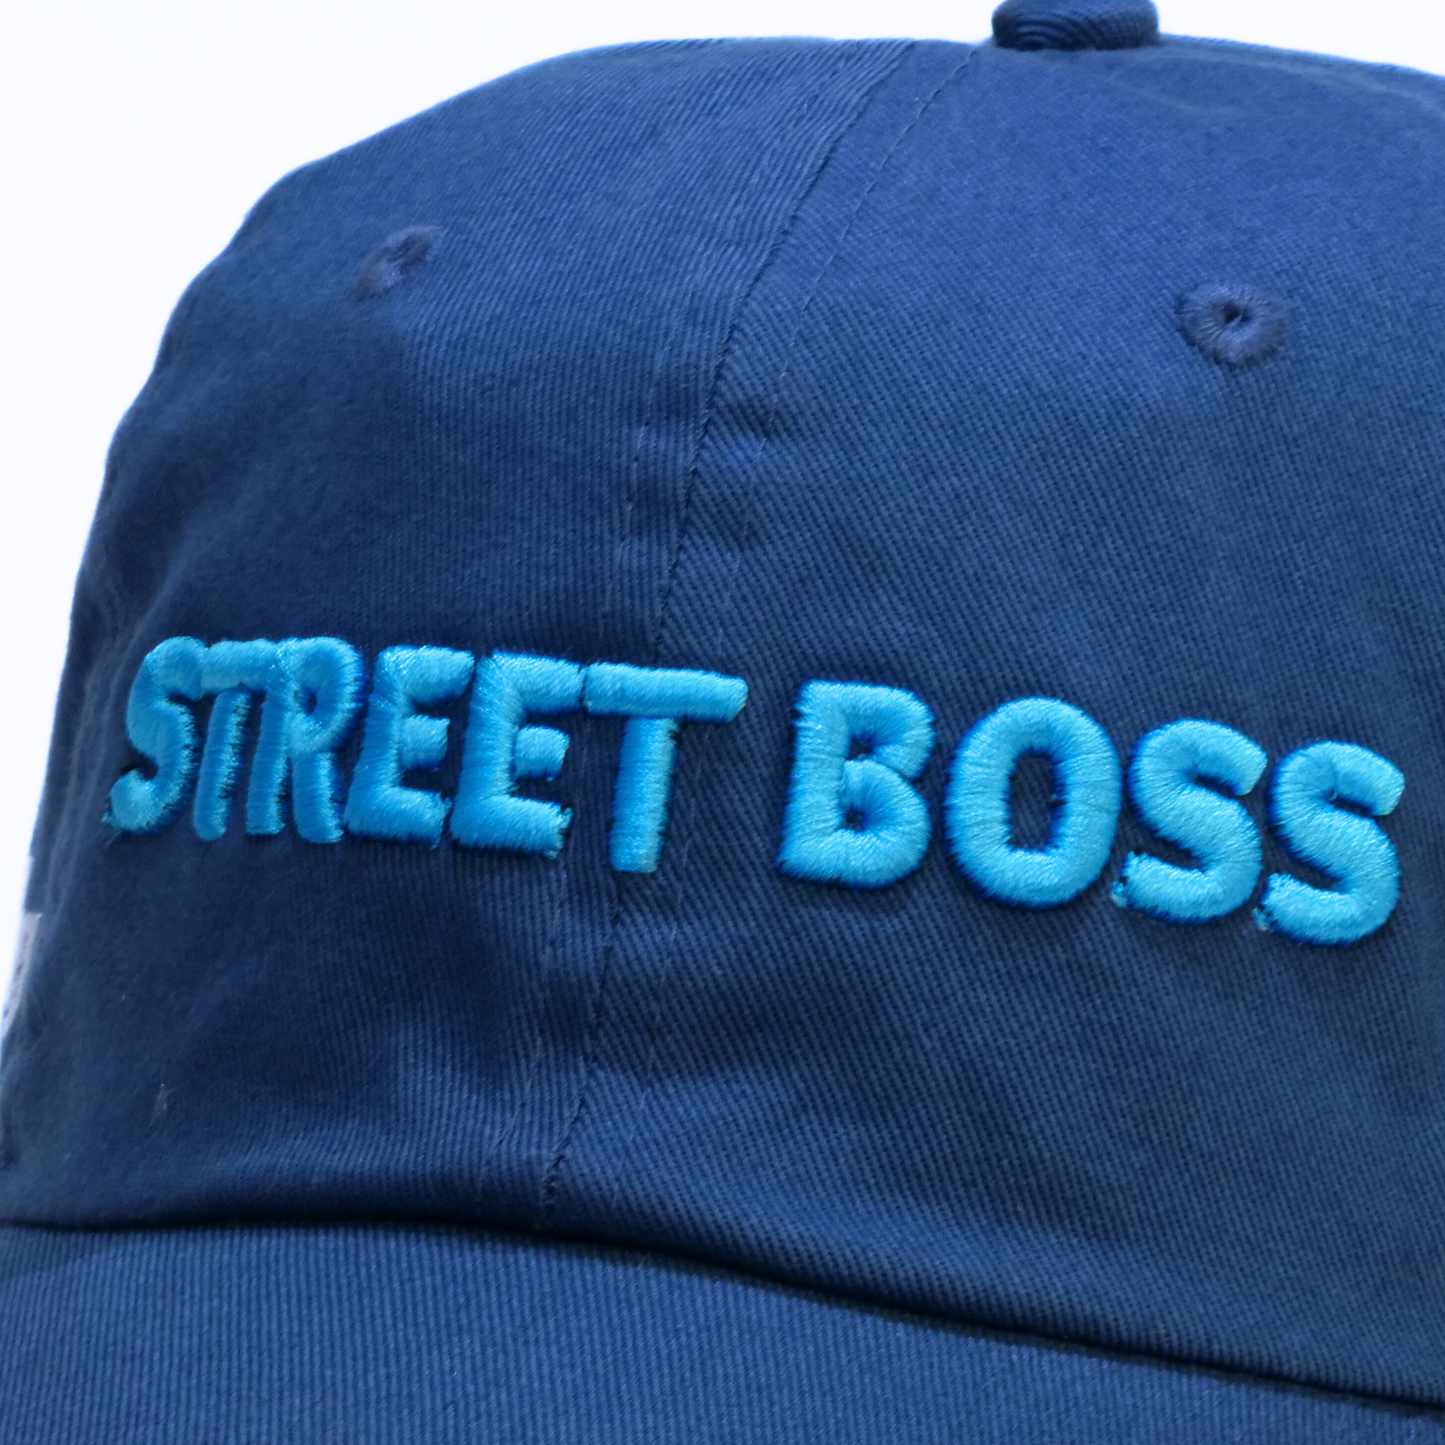 Street Boss Baseball Cap - Darley